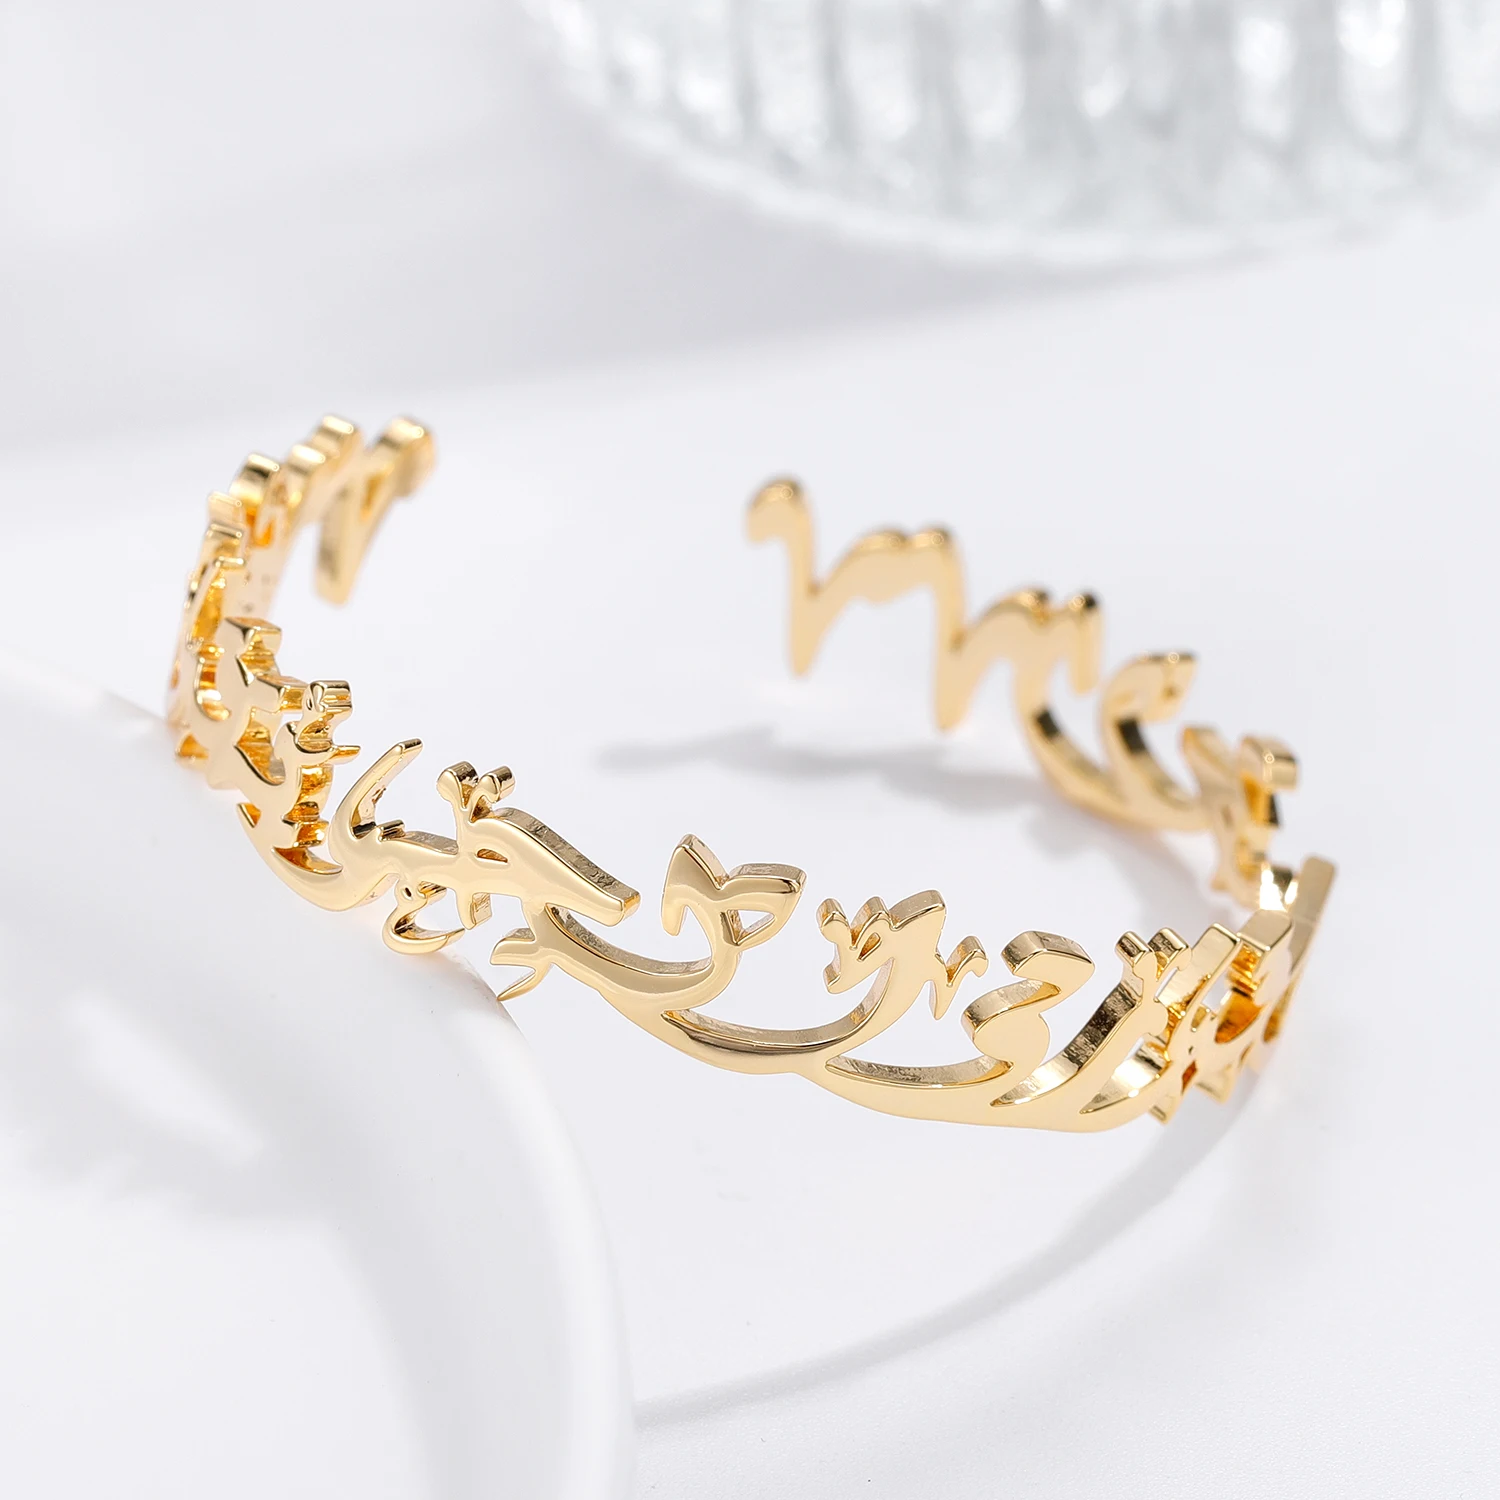 ORIENTAL BRACELET - DESTINED Gold Stainless Steel Adjustable Cuff Bracelet Personalized Bracelet For Women Jewelry Gift